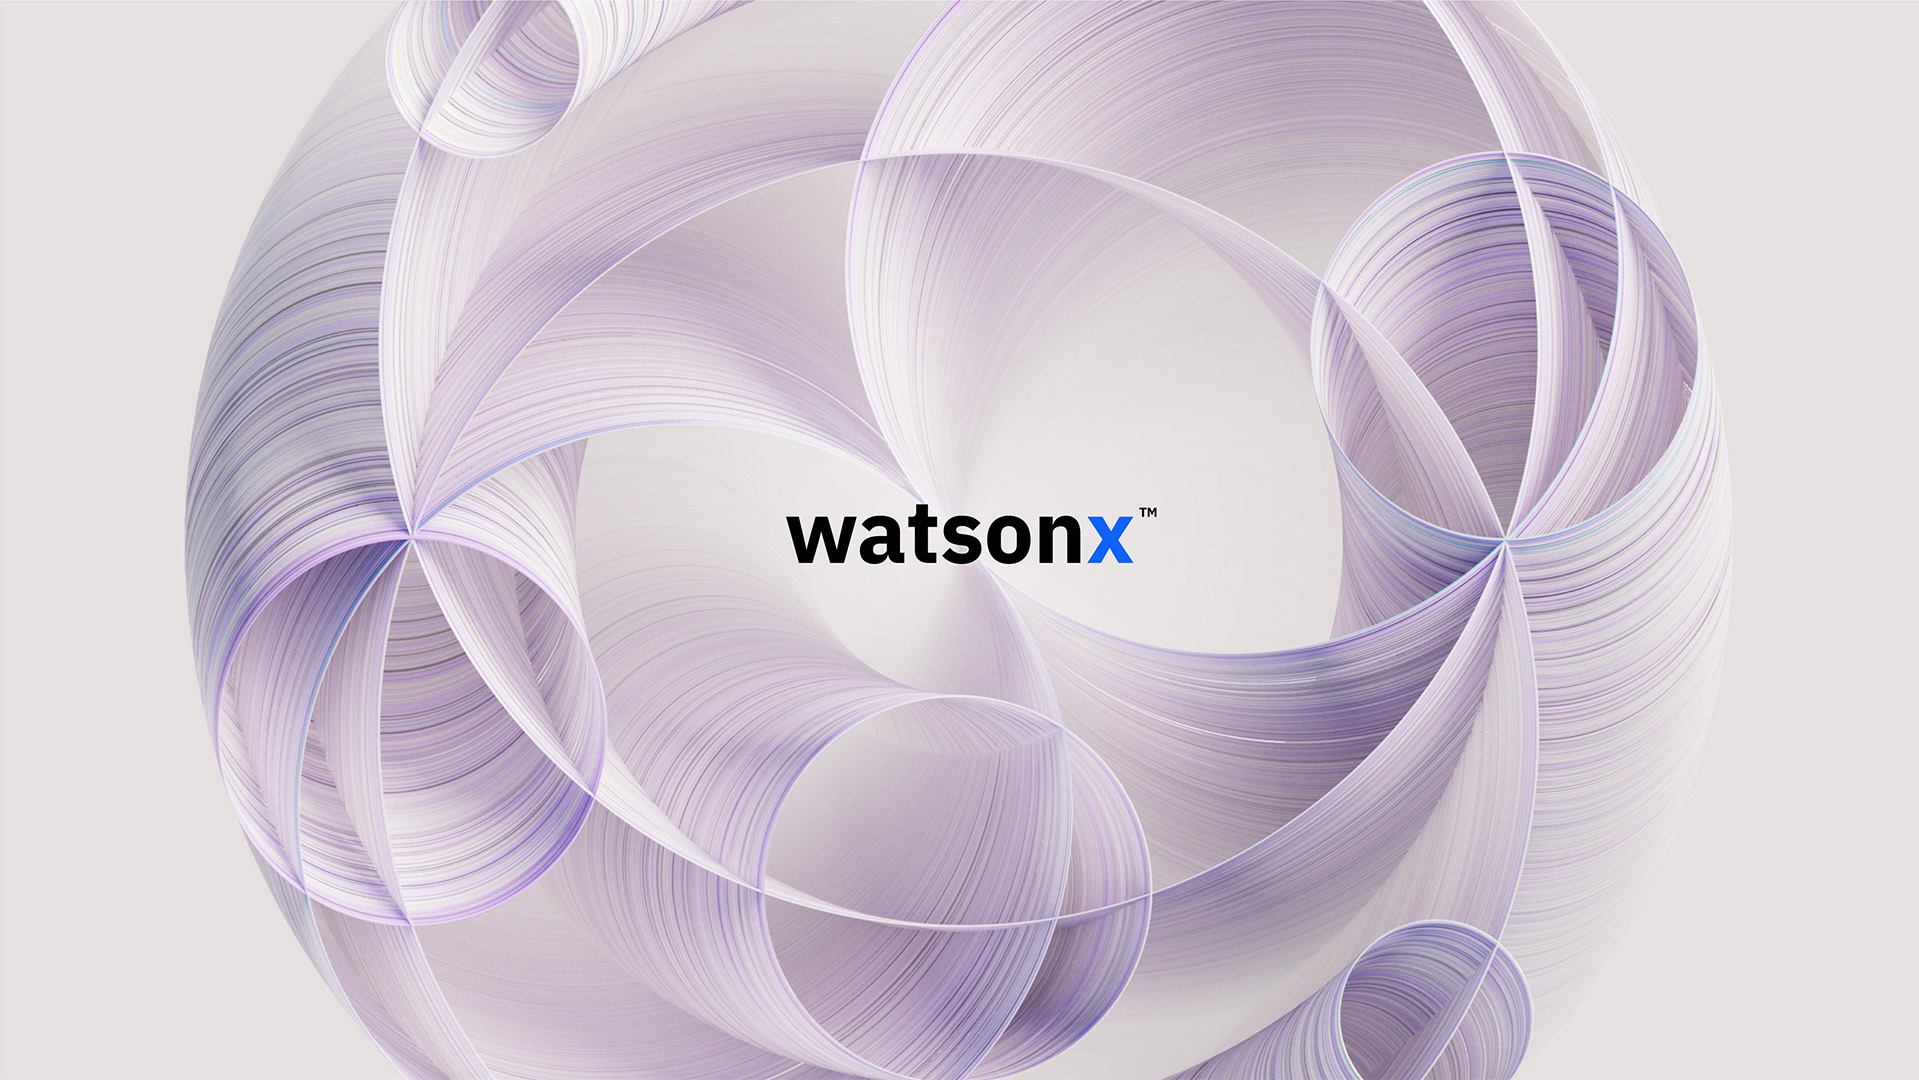 Photo of watsonx logo with purple circles surrounding it.